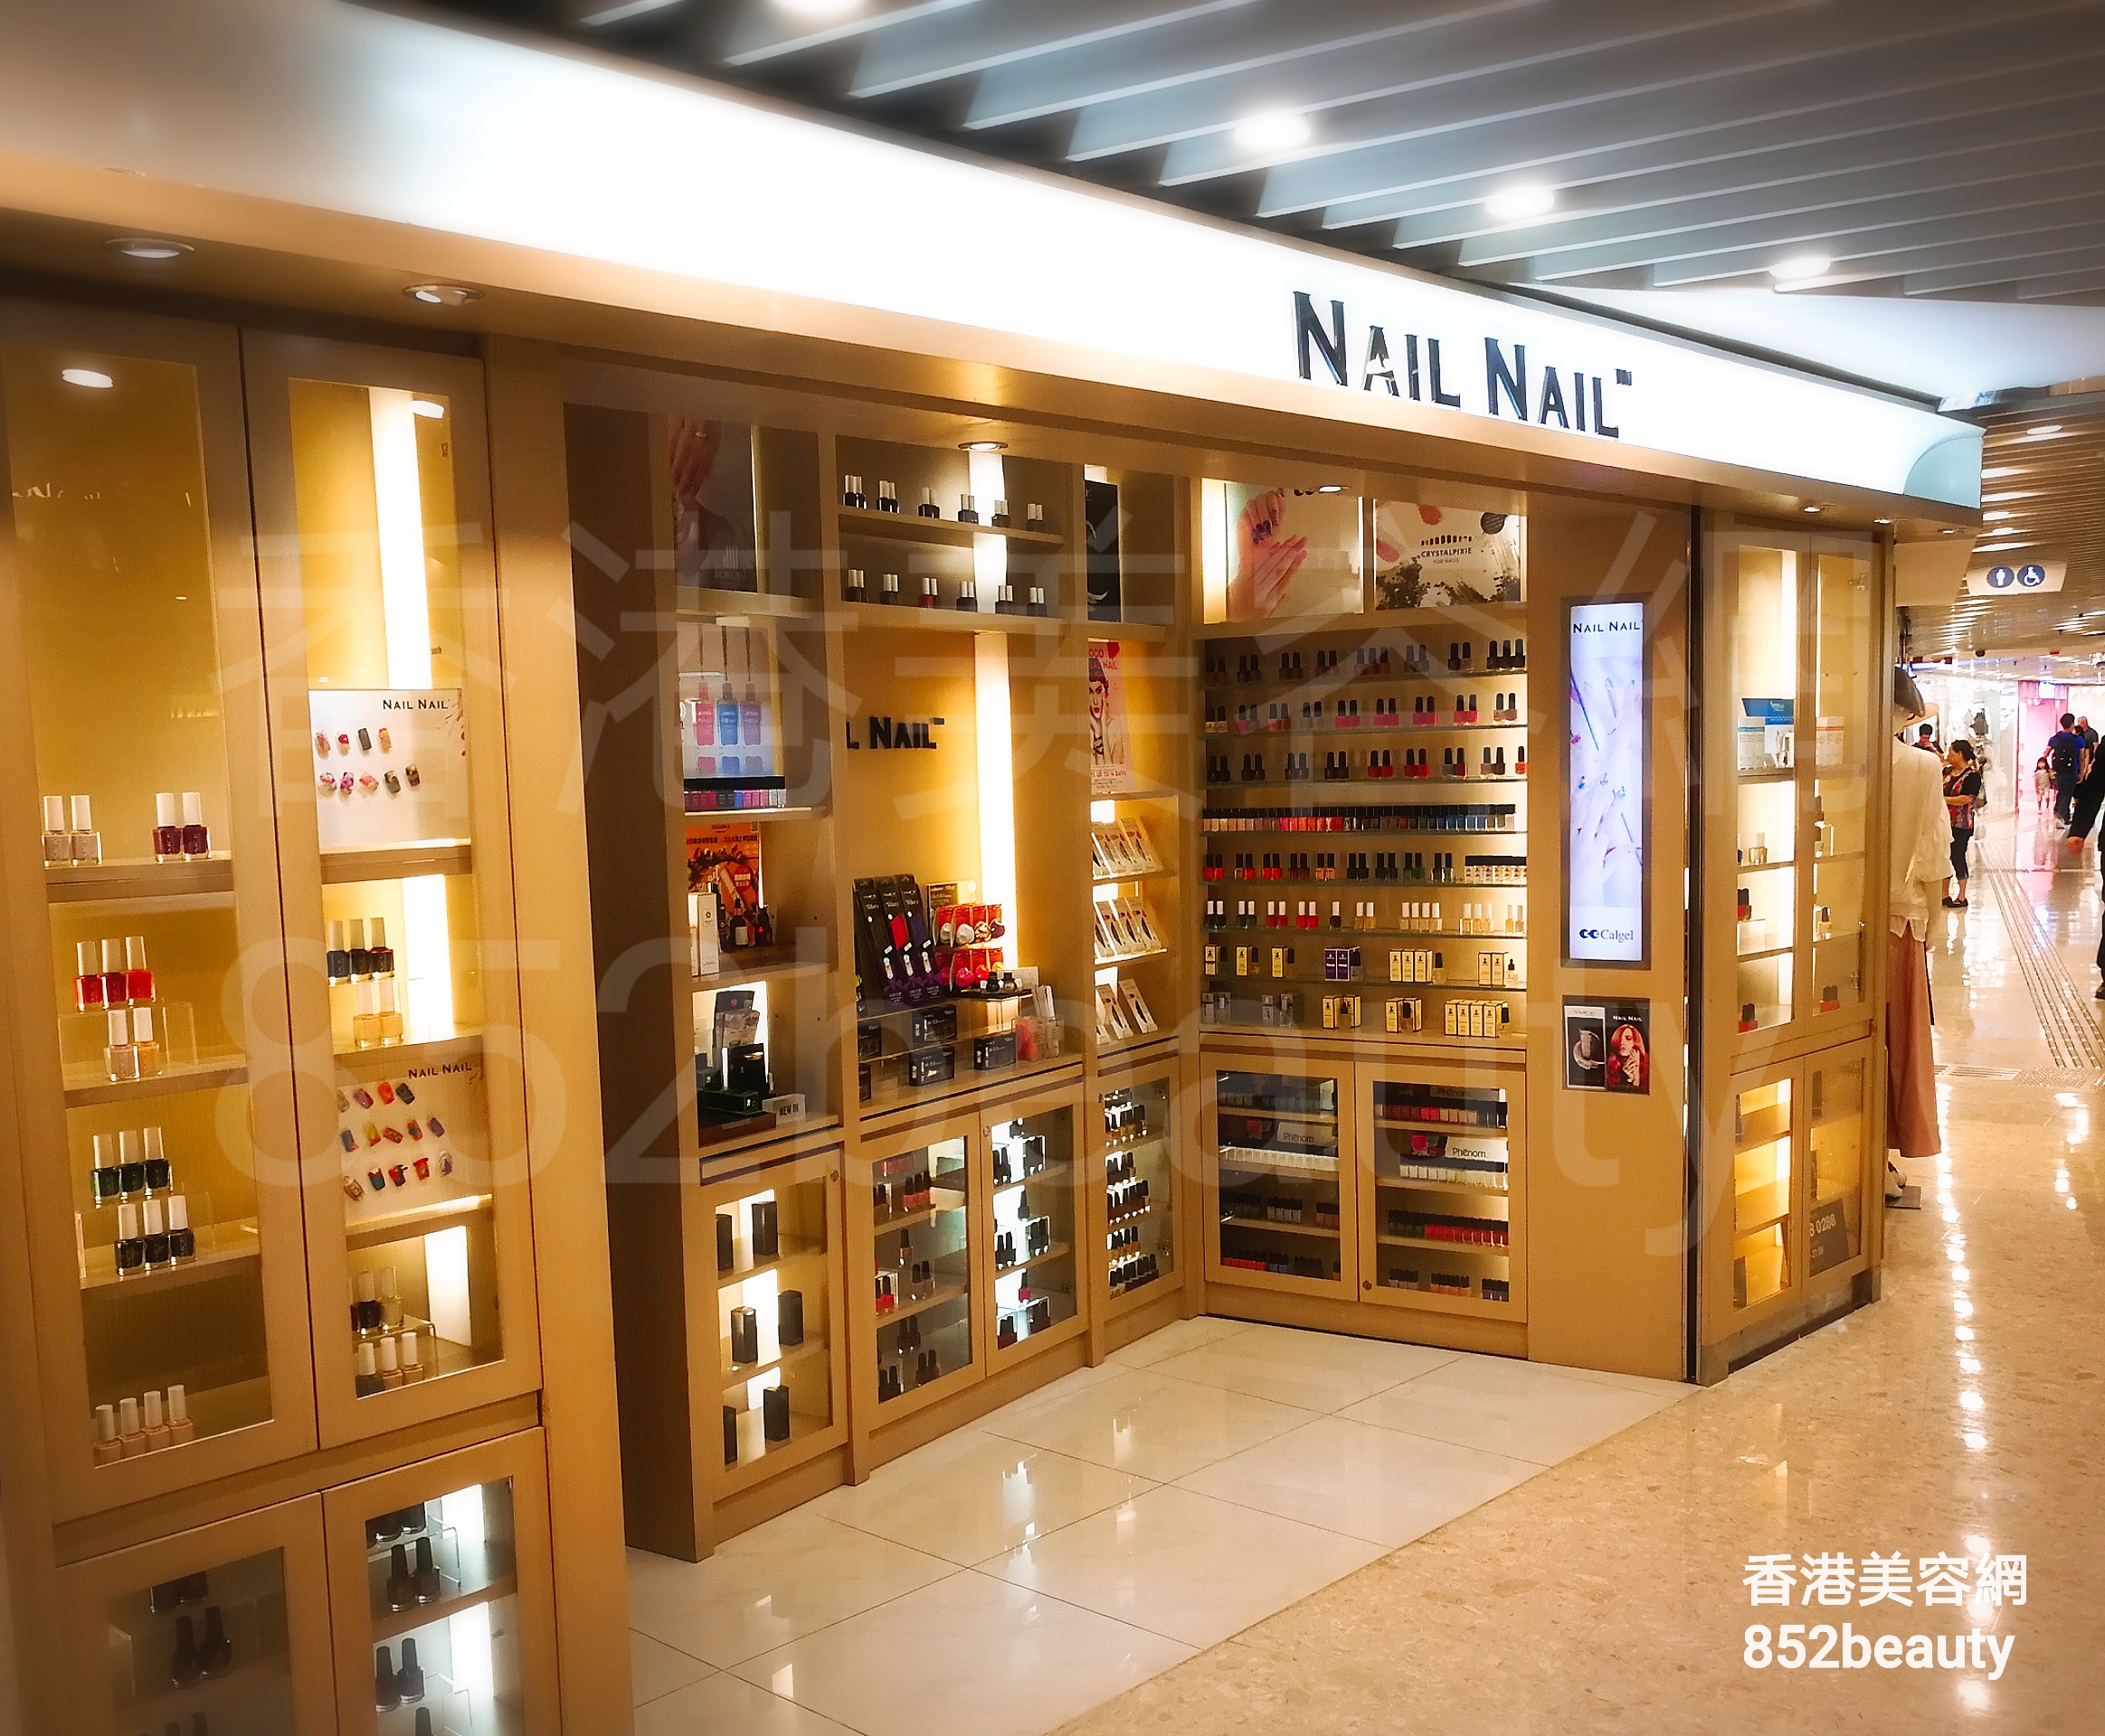 美容院 Beauty Salon 集團NAIL NAIL (沙田) @ 香港美容網 HK Beauty Salon